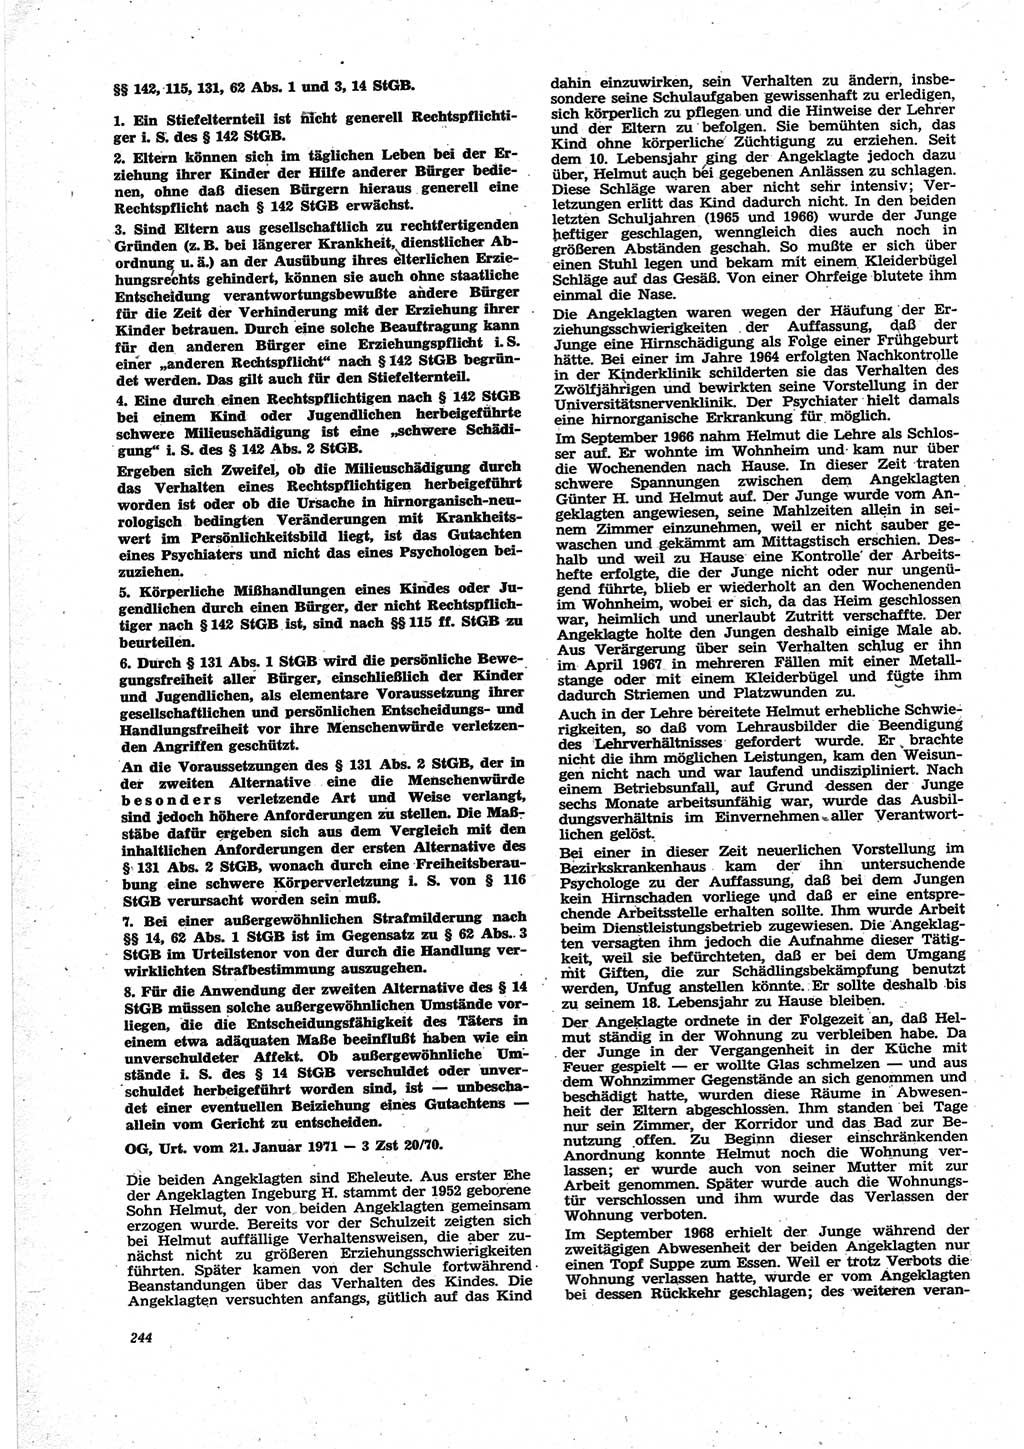 Neue Justiz (NJ), Zeitschrift für Recht und Rechtswissenschaft [Deutsche Demokratische Republik (DDR)], 25. Jahrgang 1971, Seite 244 (NJ DDR 1971, S. 244)